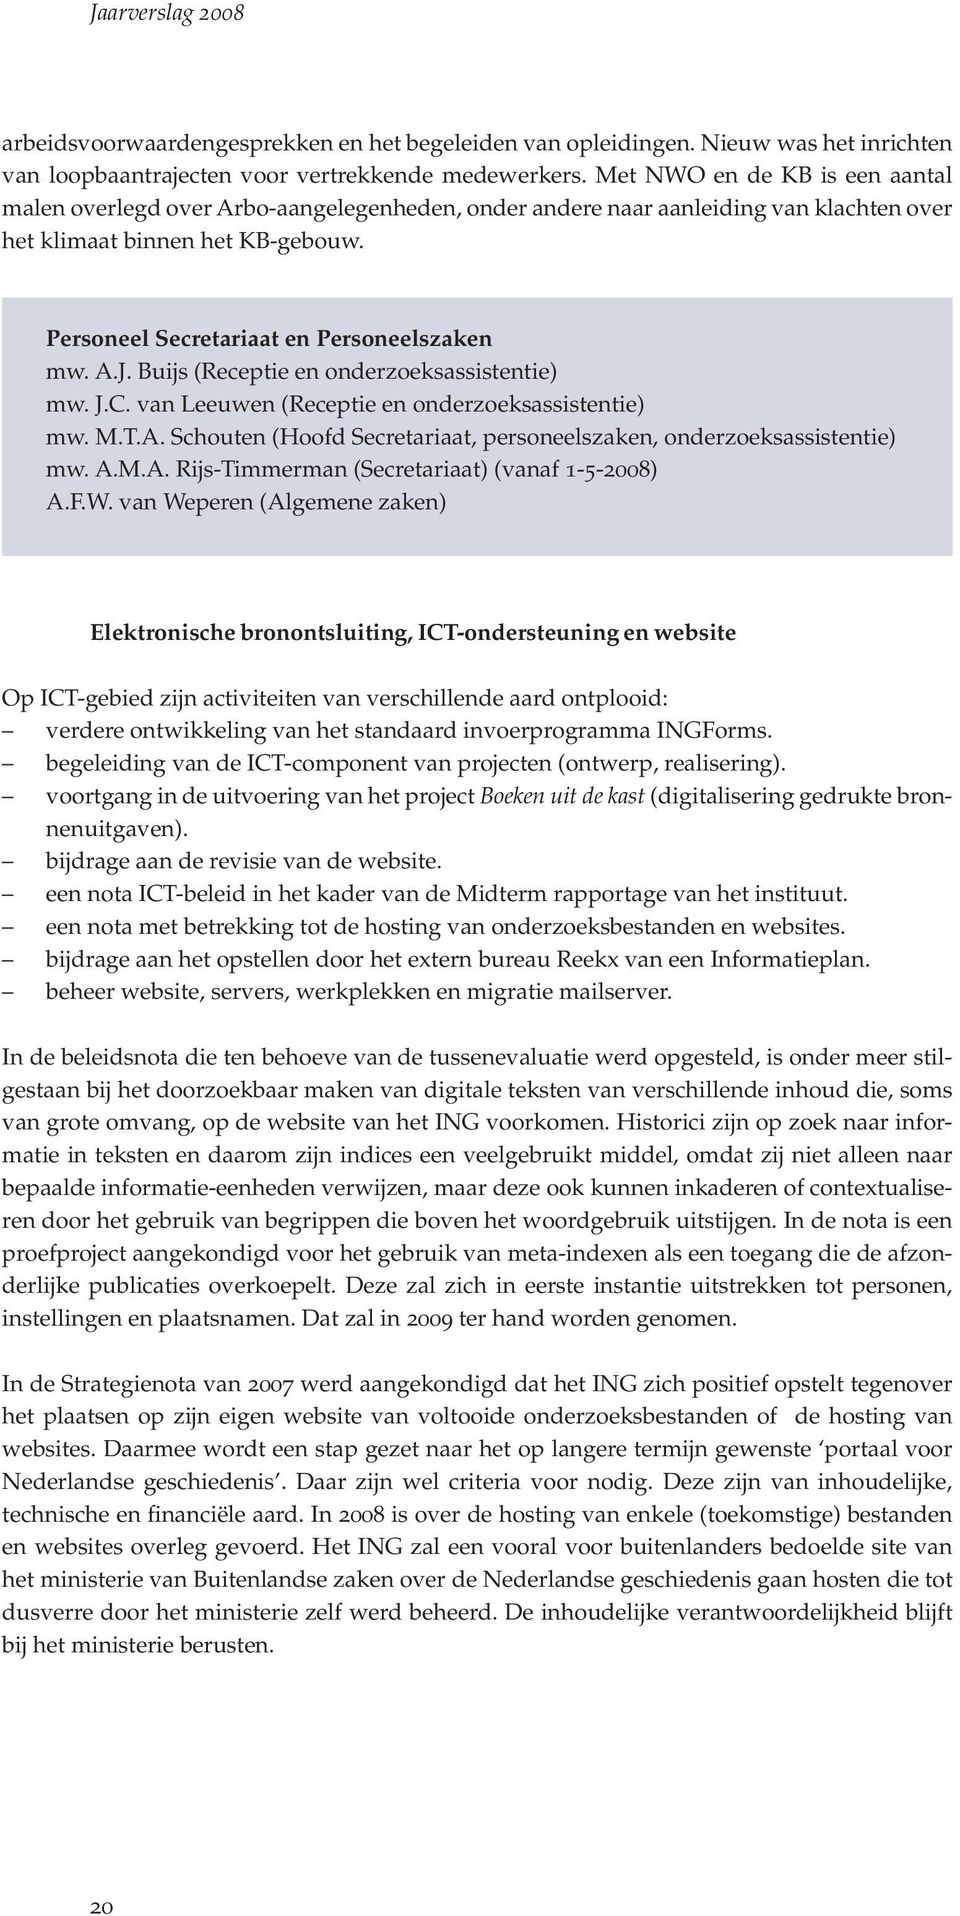 A.J. Buijs (Receptie en onderzoeksassistentie) mw. J.C. van Leeuwen (Receptie en onderzoeksassistentie) mw. M.T.A. Schouten (Hoofd Secretariaat, personeelszaken, onderzoeksassistentie) mw. A.M.A. Rijs-Timmerman (Secretariaat) (vanaf 1-5-2008) A.